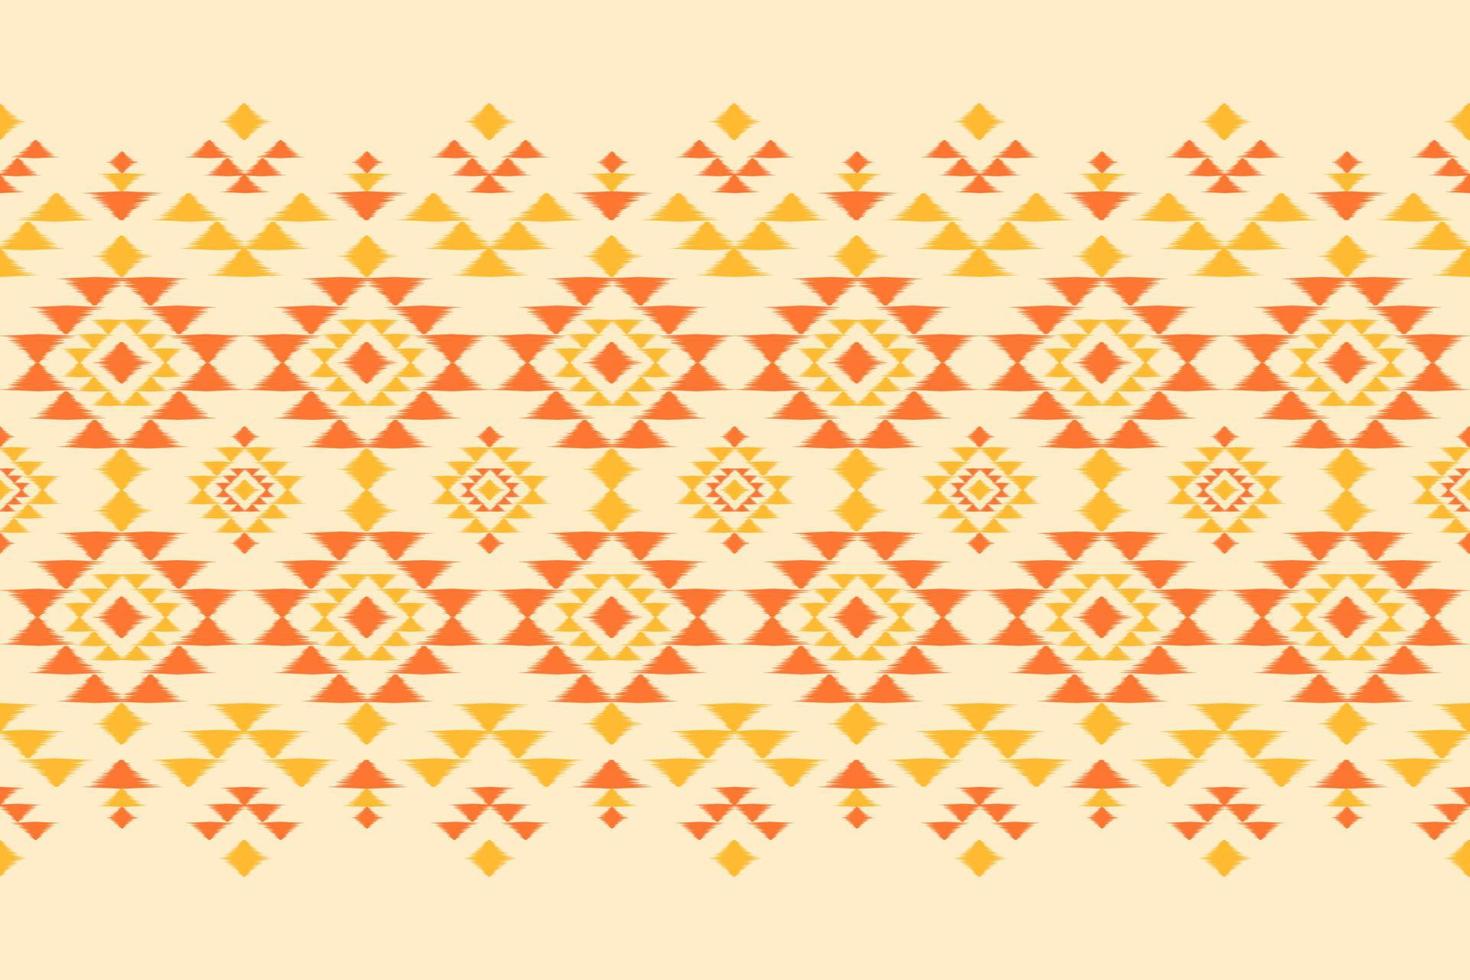 patrón étnico ikat sin costuras en tribal. estampado de adornos geométricos aztecas. tela estilo indio. vector